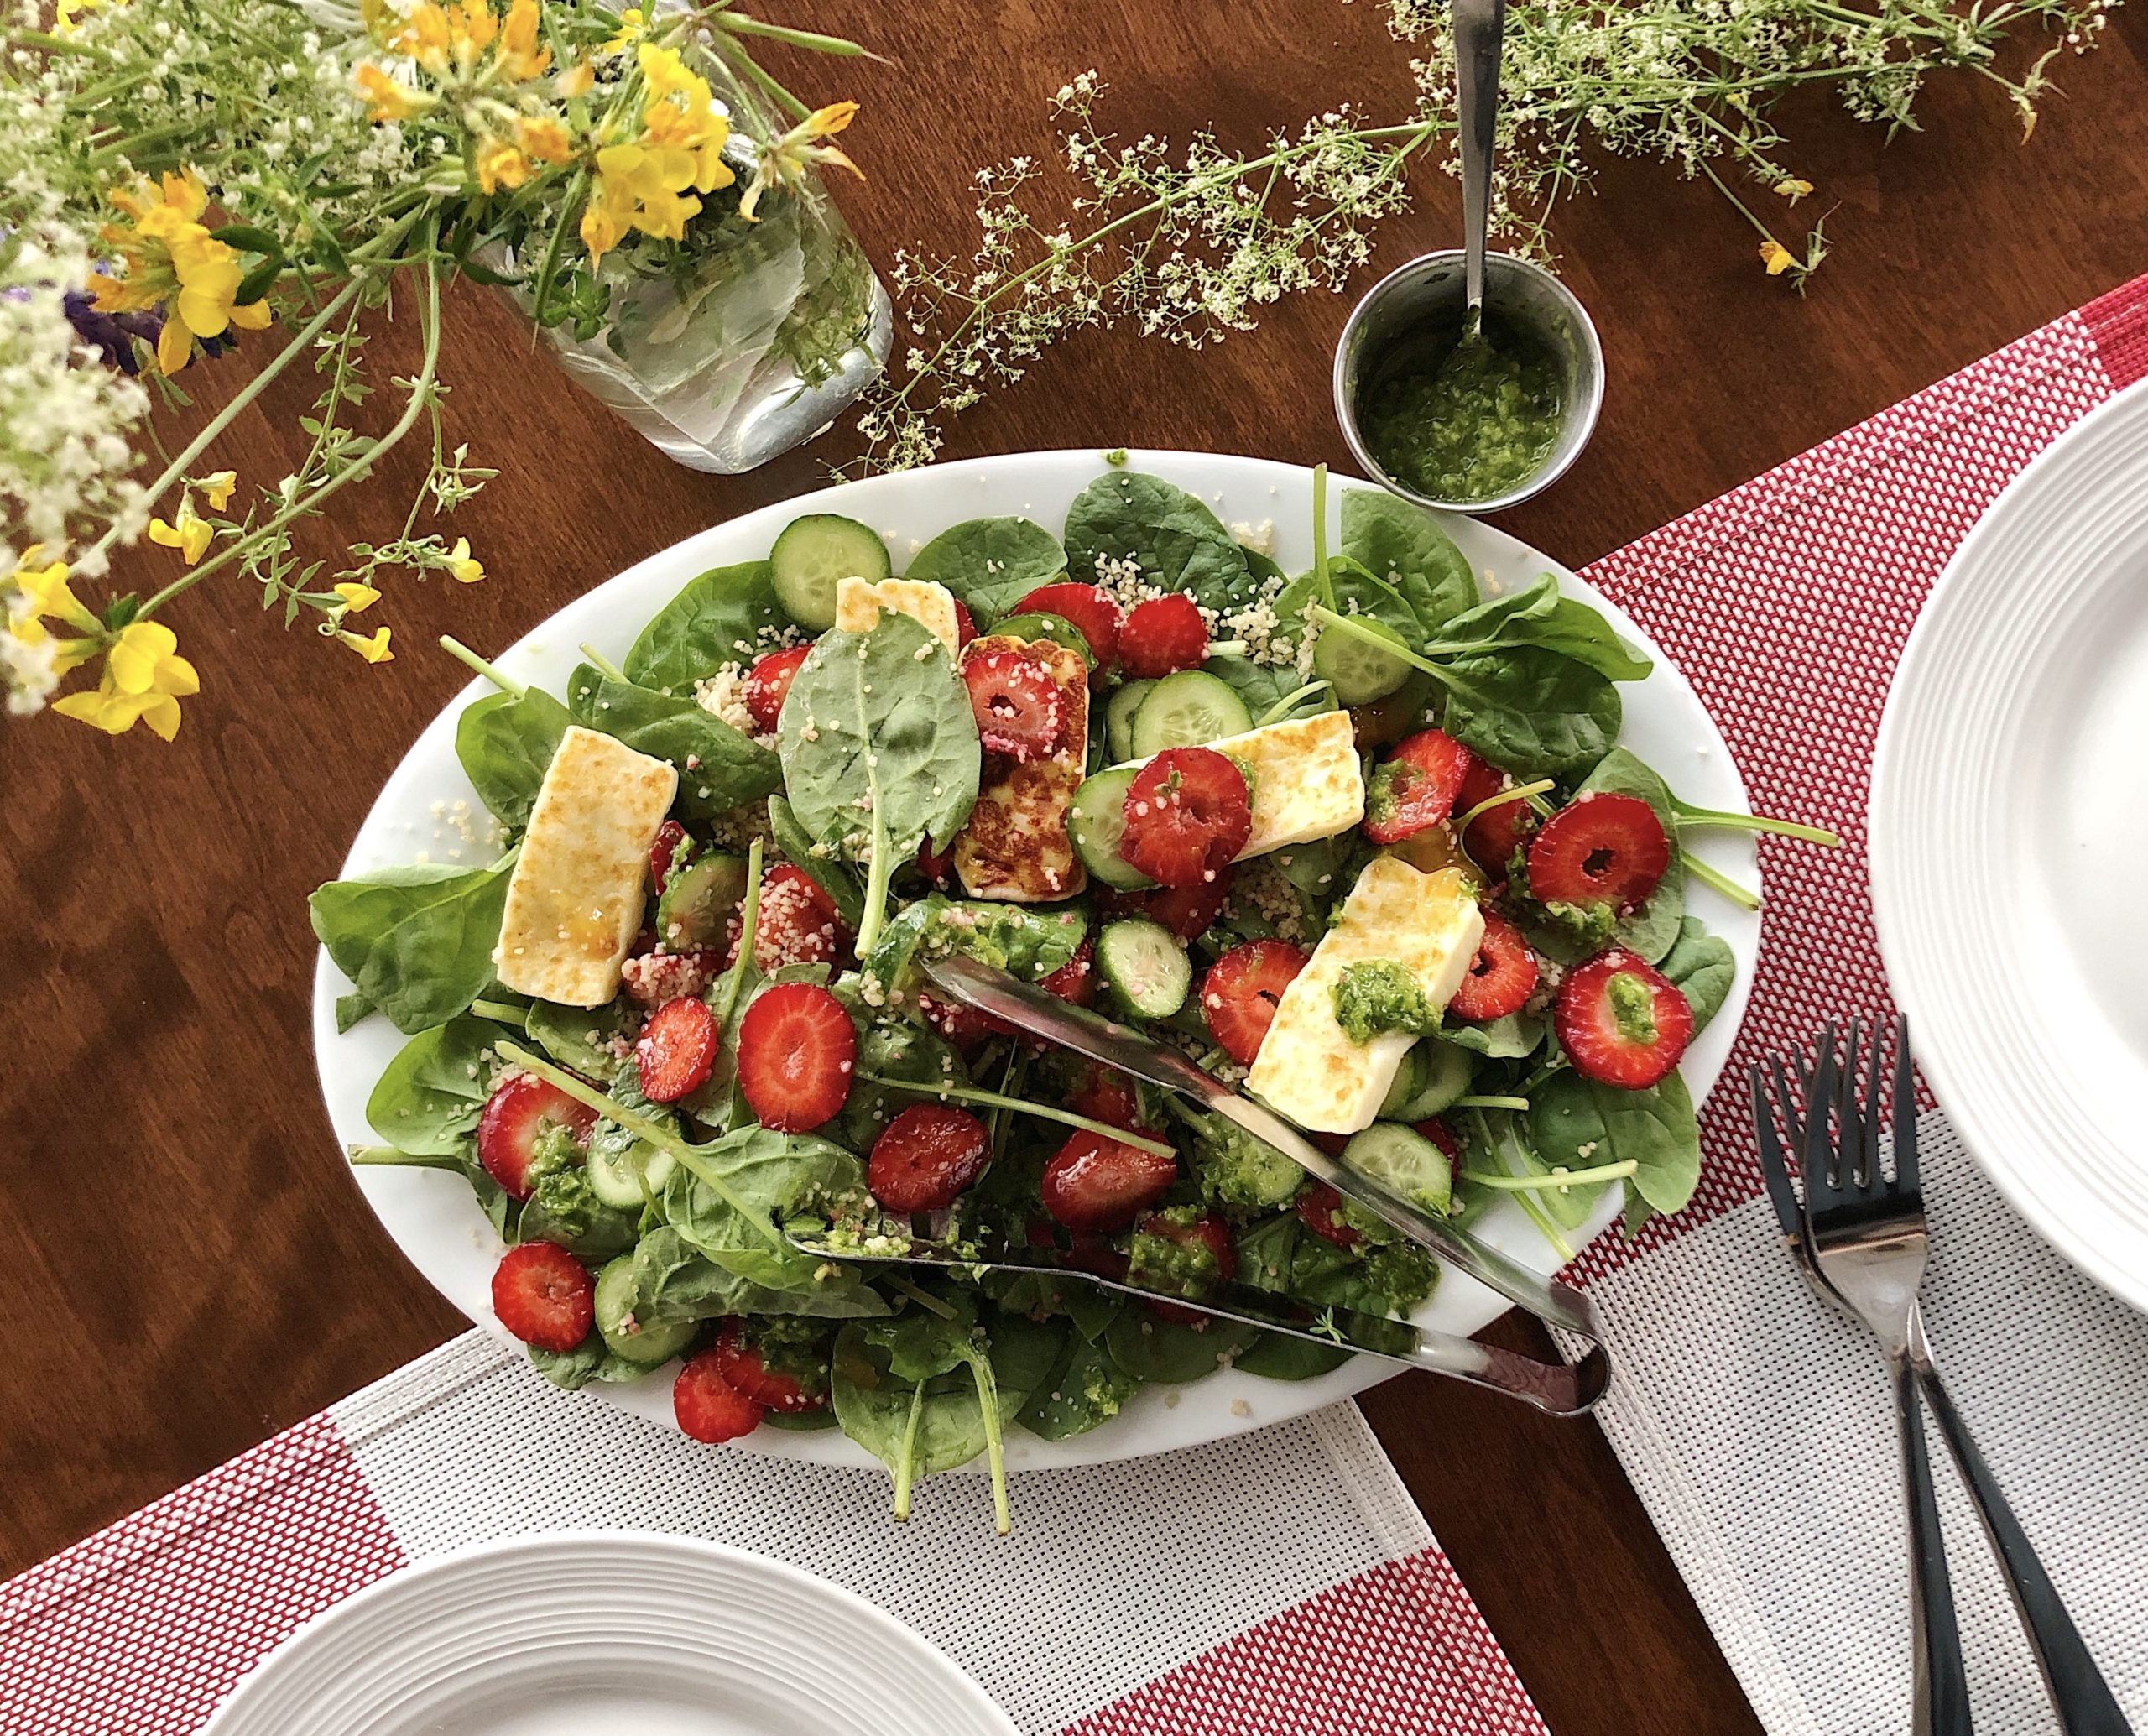 Salade de fraises marinées au jus de yuzu, citron vert et basilic pour 8  personnes - Recettes - Elle à Table